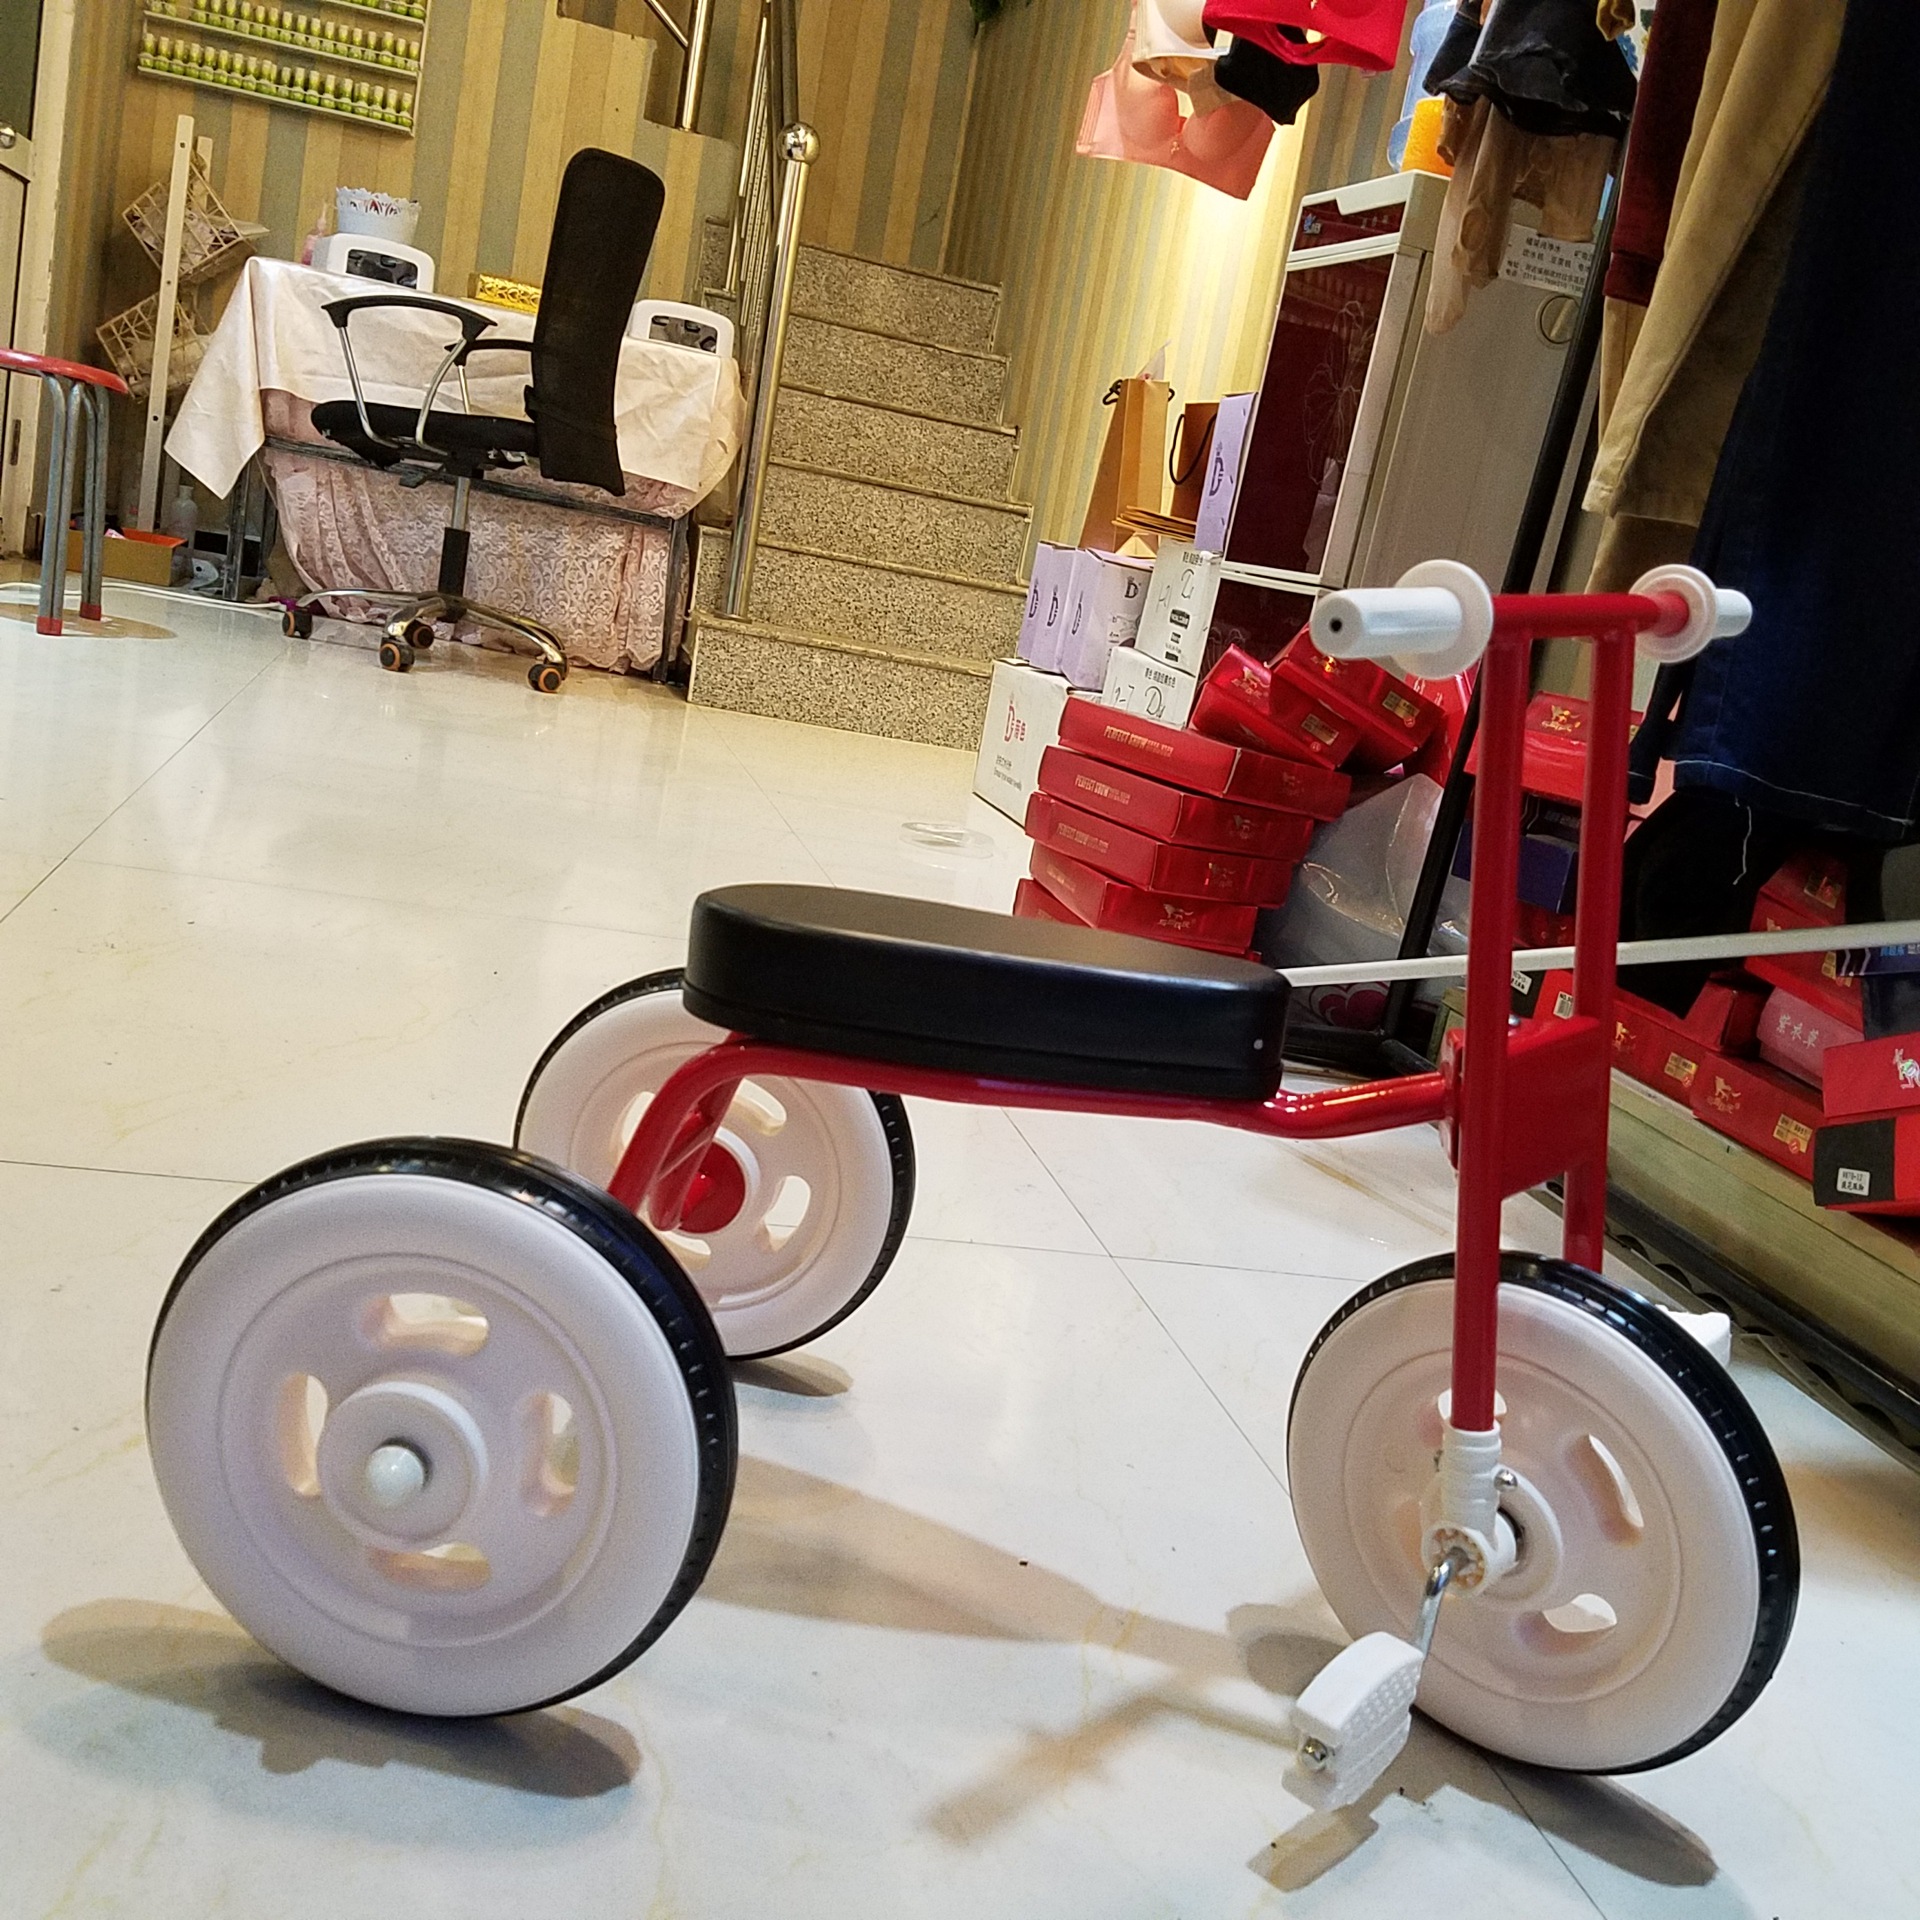 米妮 新款童车多功能三轮可升降儿童学步车 三合一宝宝滑板车-阿里巴巴